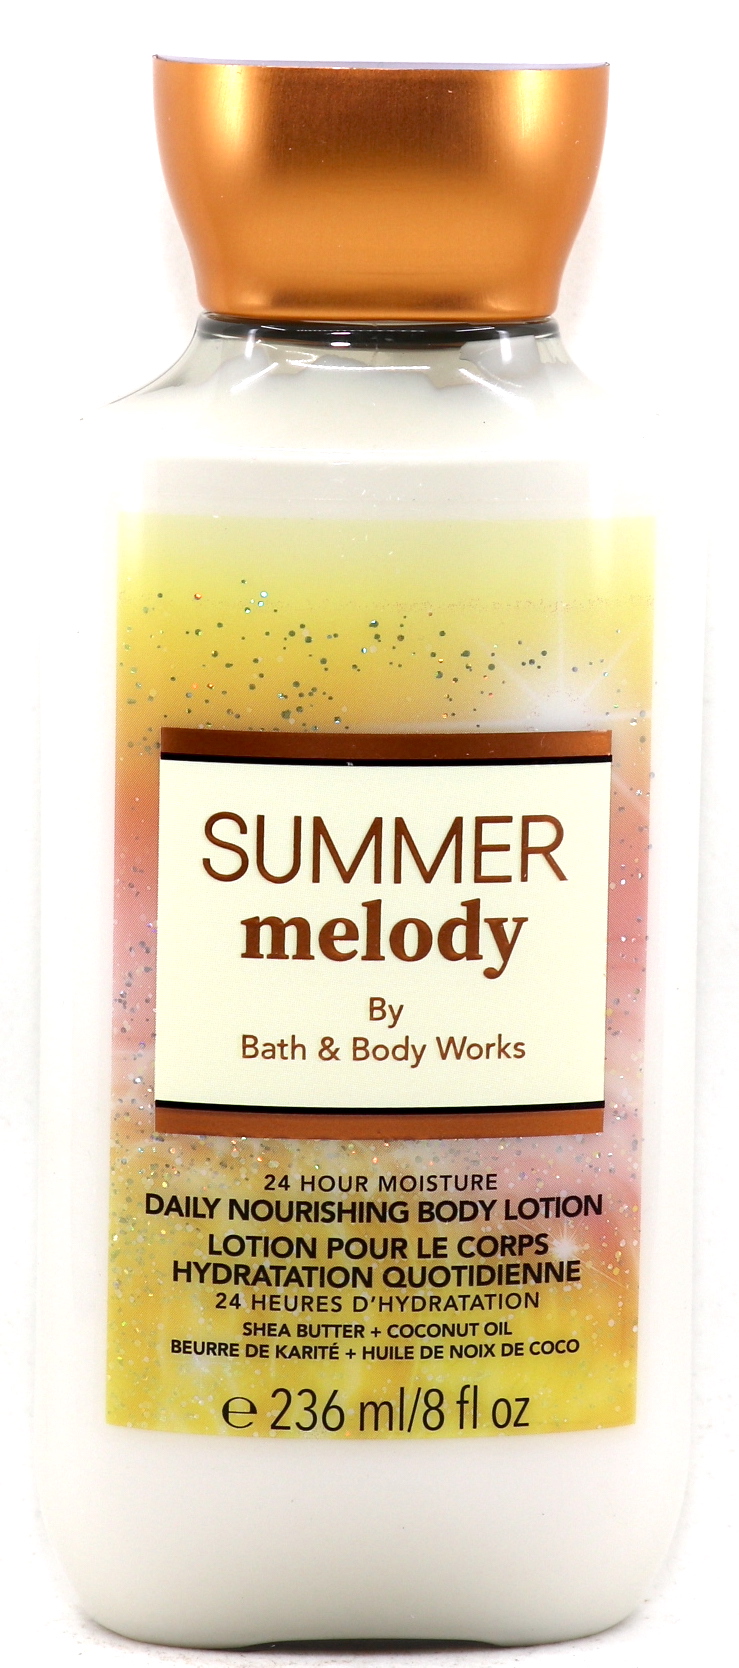 Bath & Body Works Summer Melody Body Lotion